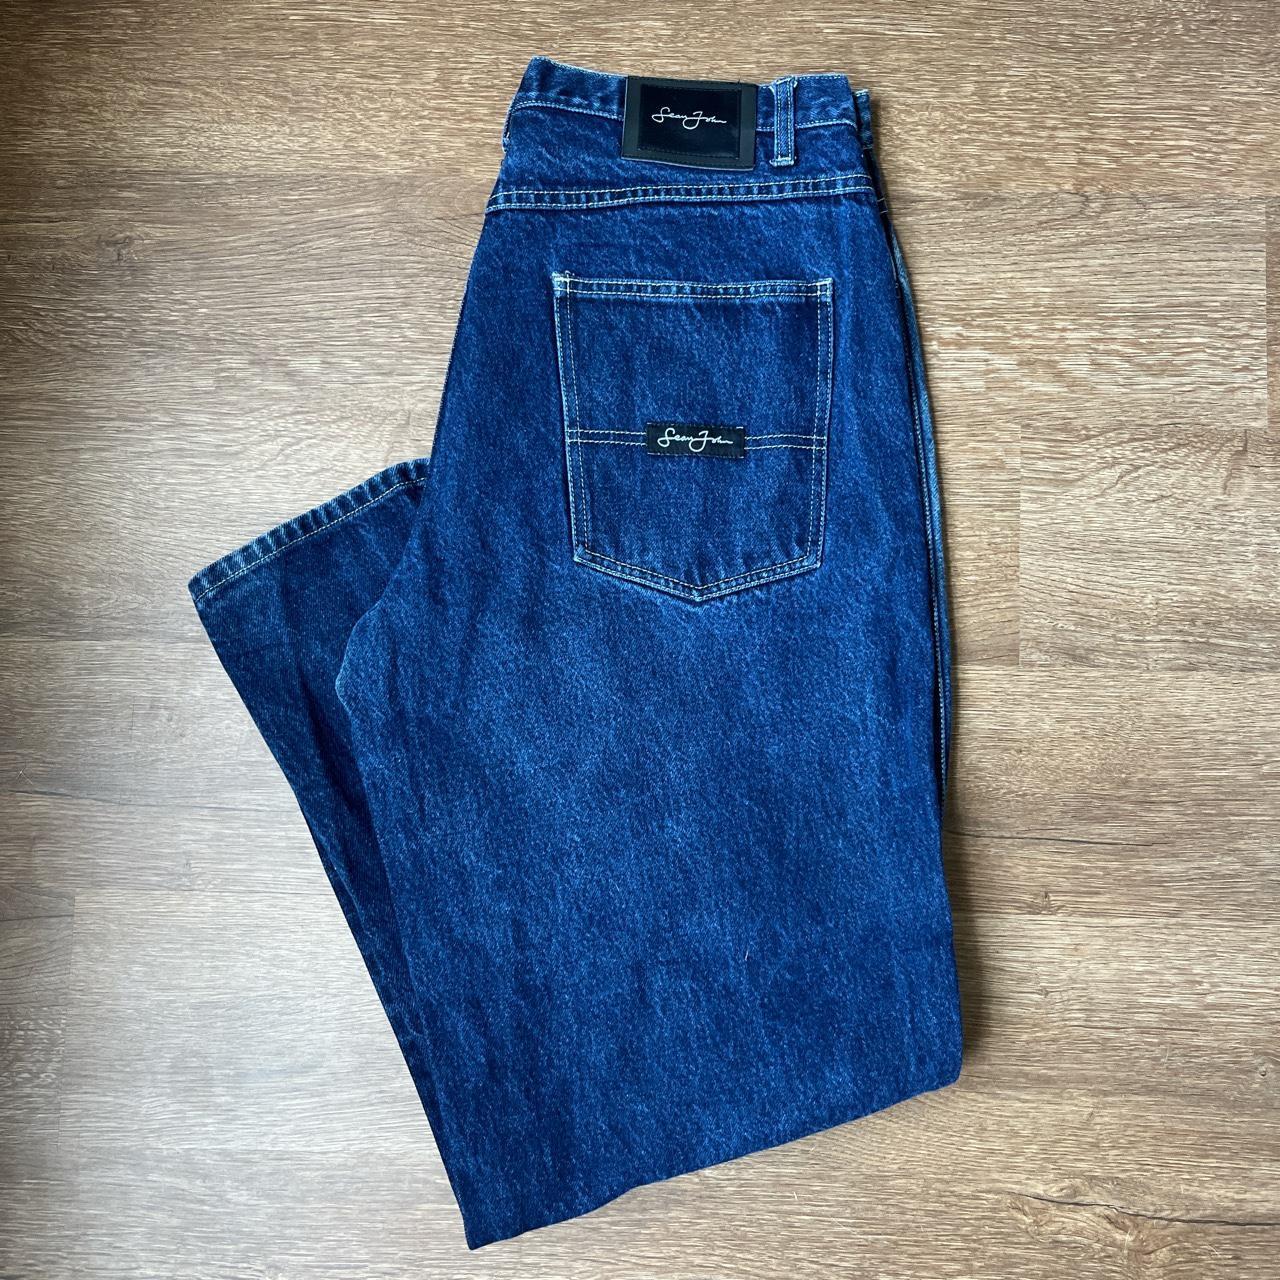 Vintage Sean John Jeans Amazing Condition! Size:... - Depop